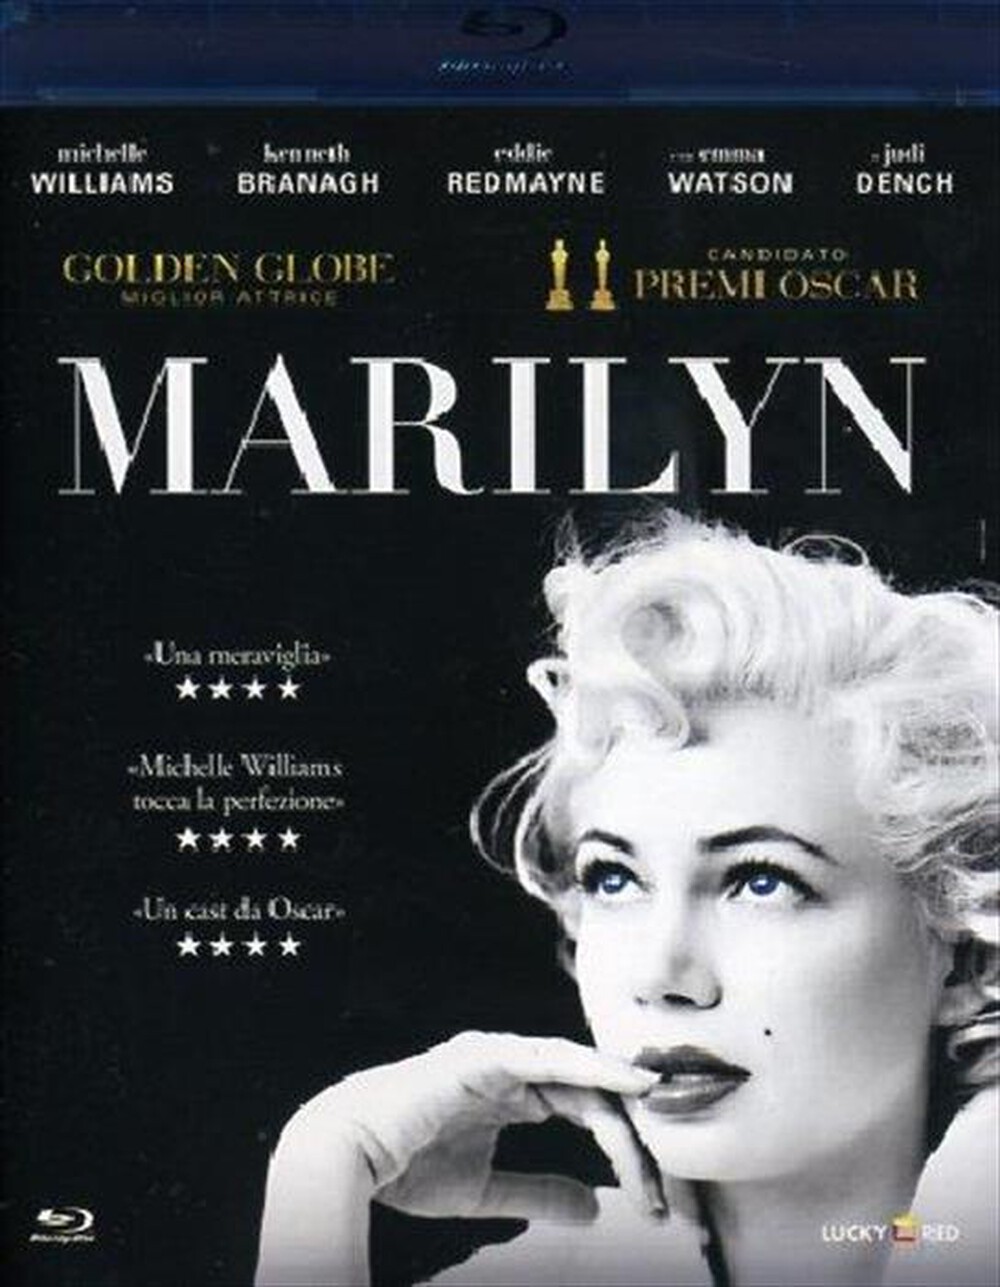 "WARNER HOME VIDEO - Marilyn"